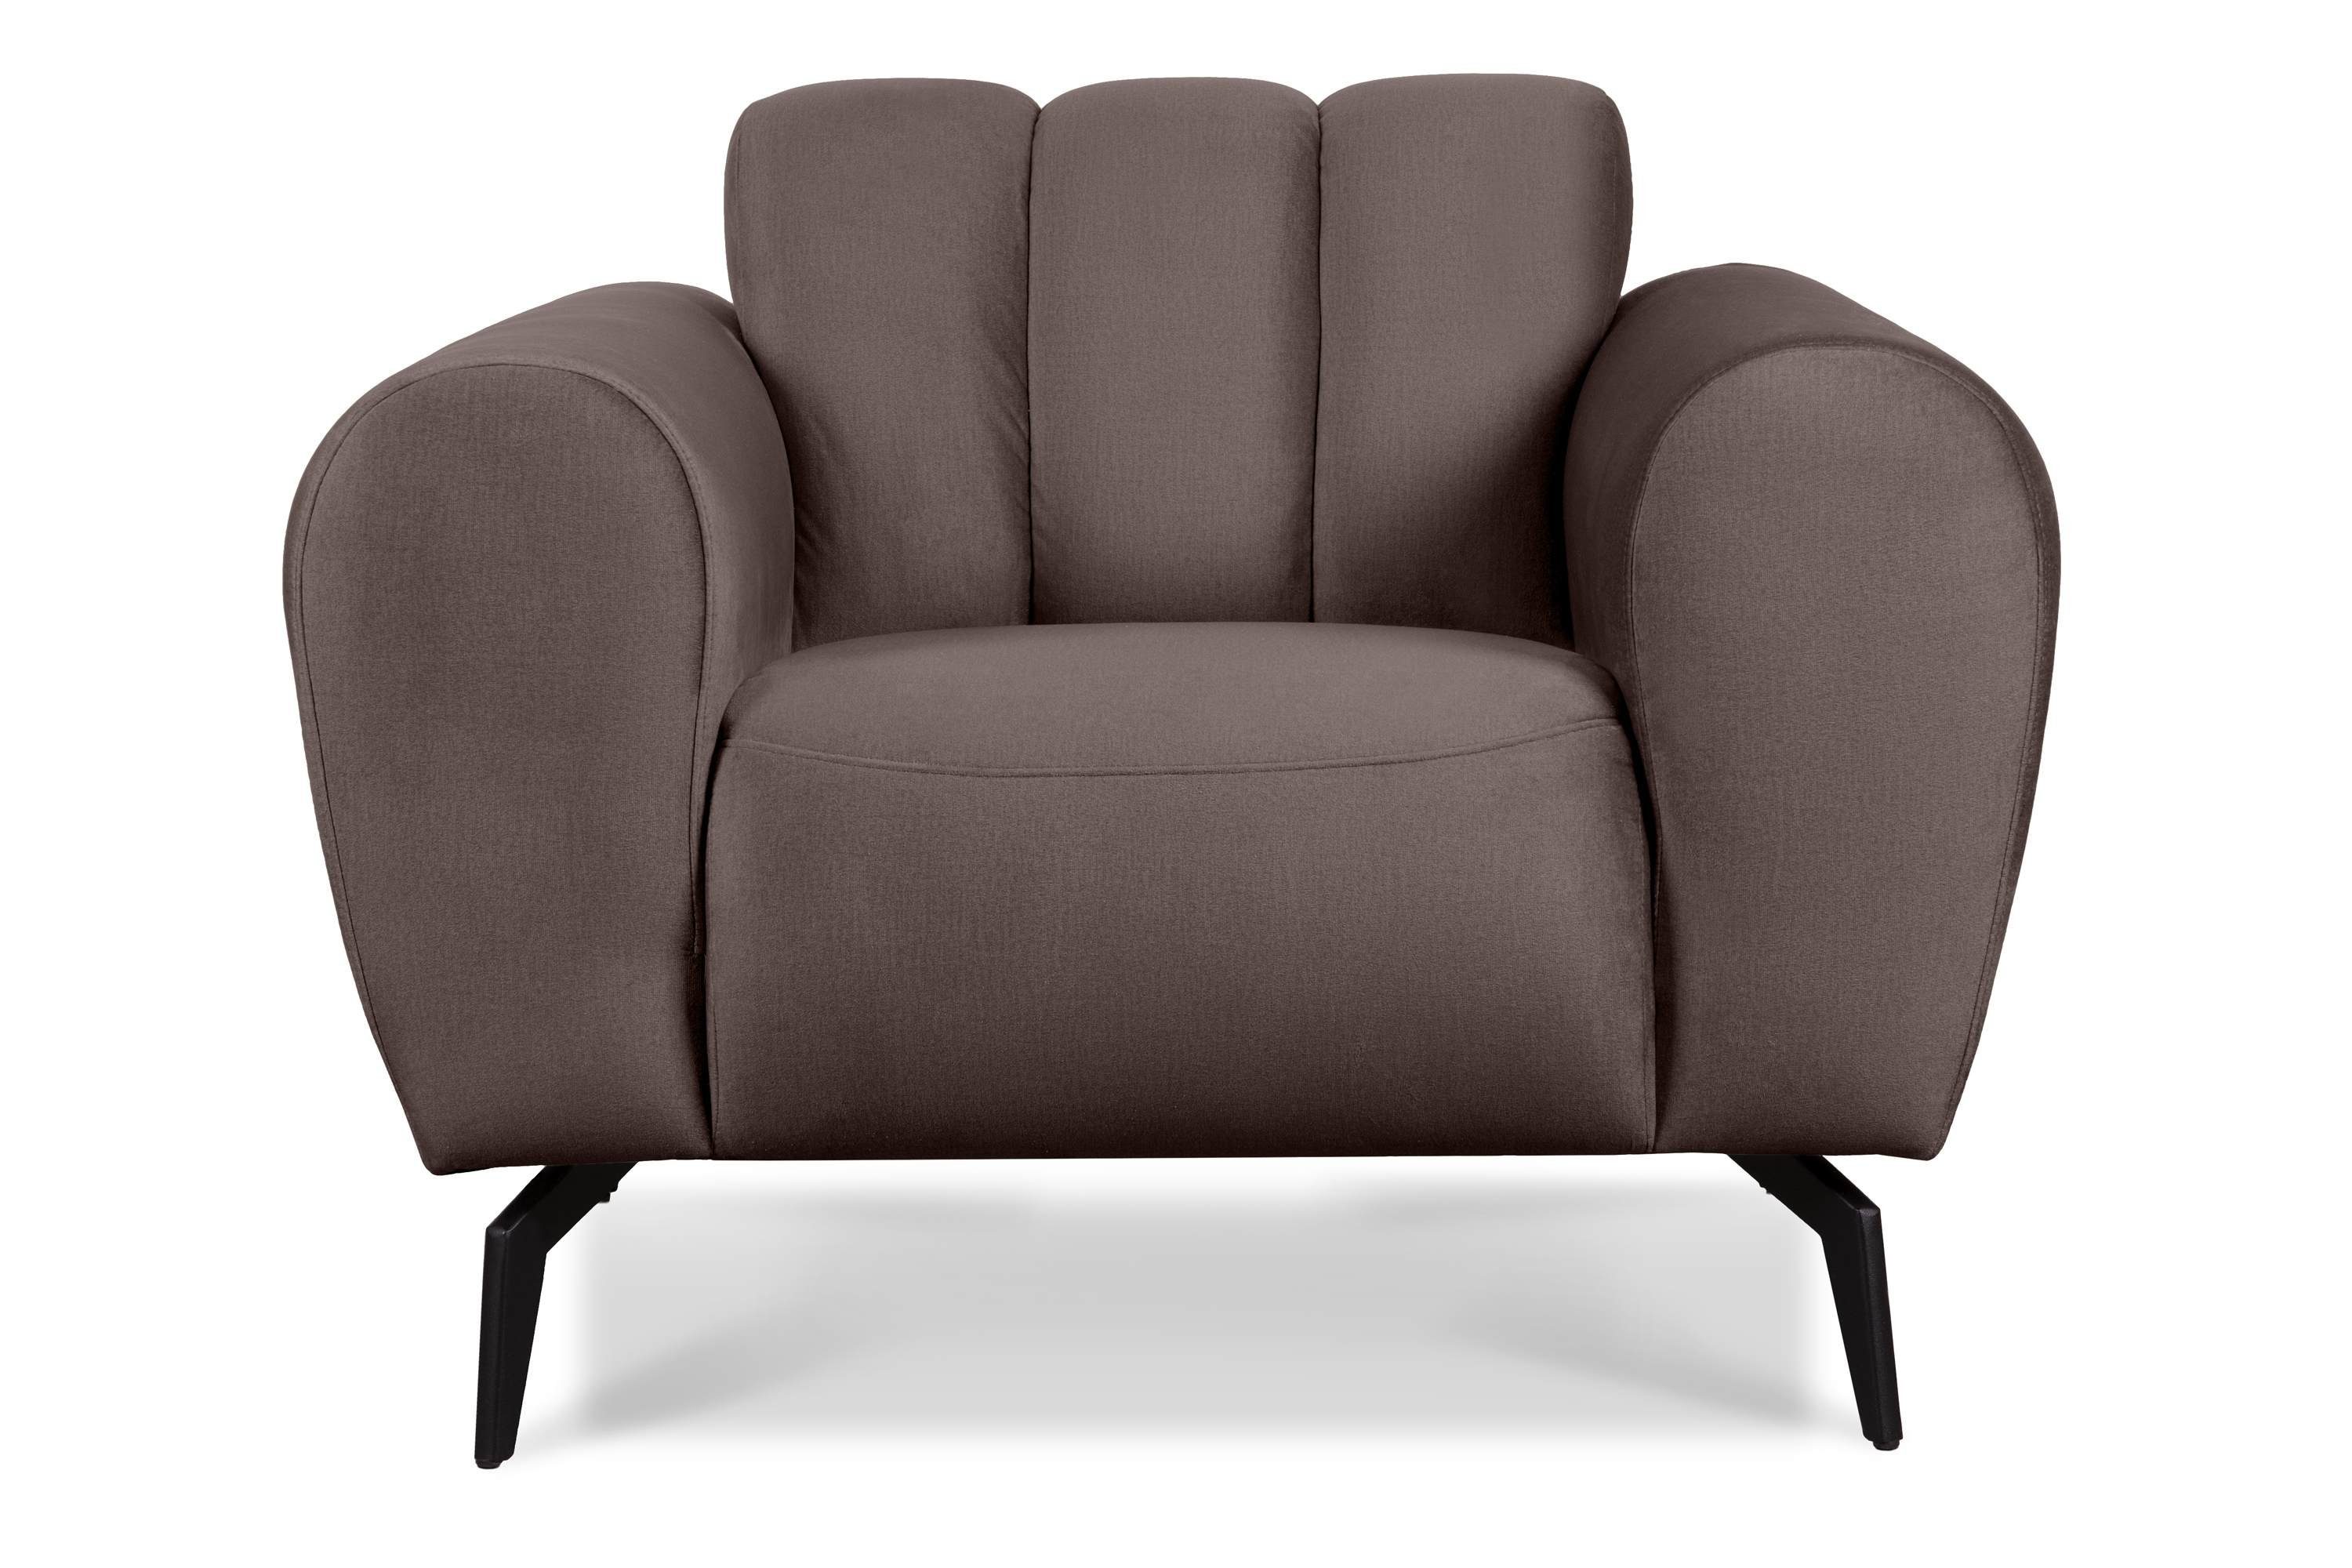 Konsimo Sessel RUBERO mit breiten Armlehnen, Gewebe mit wasserabweisenden Eigenschaften, modernes Design braun | braun